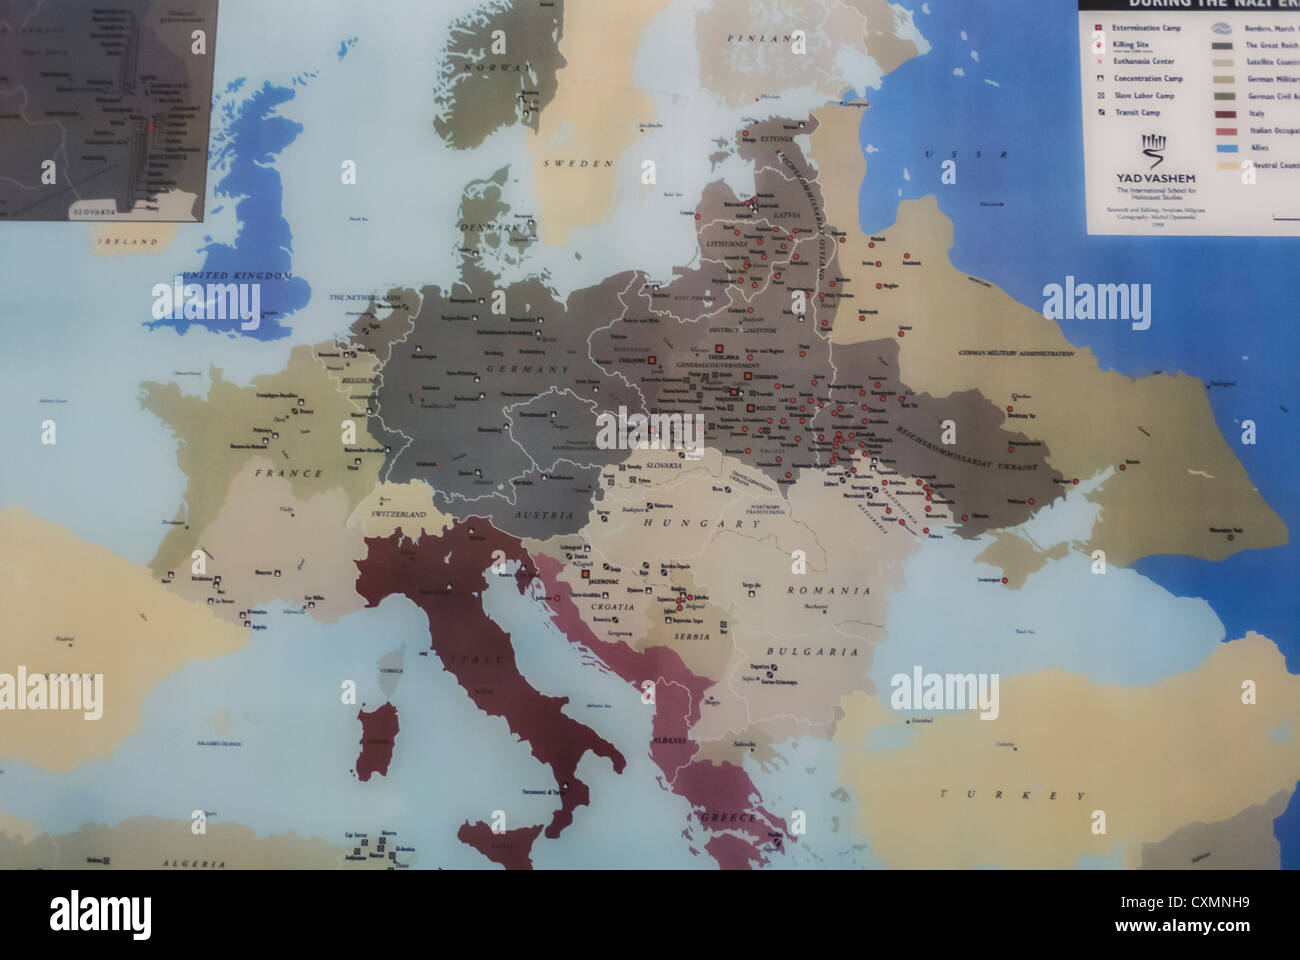 Vecchia mappa dell'Europa, campi di concentramento nazisti, Nazioni Unite, persecuzione degli ebrei in europa, Olocausto nazismo ebrei della seconda guerra mondiale Foto Stock